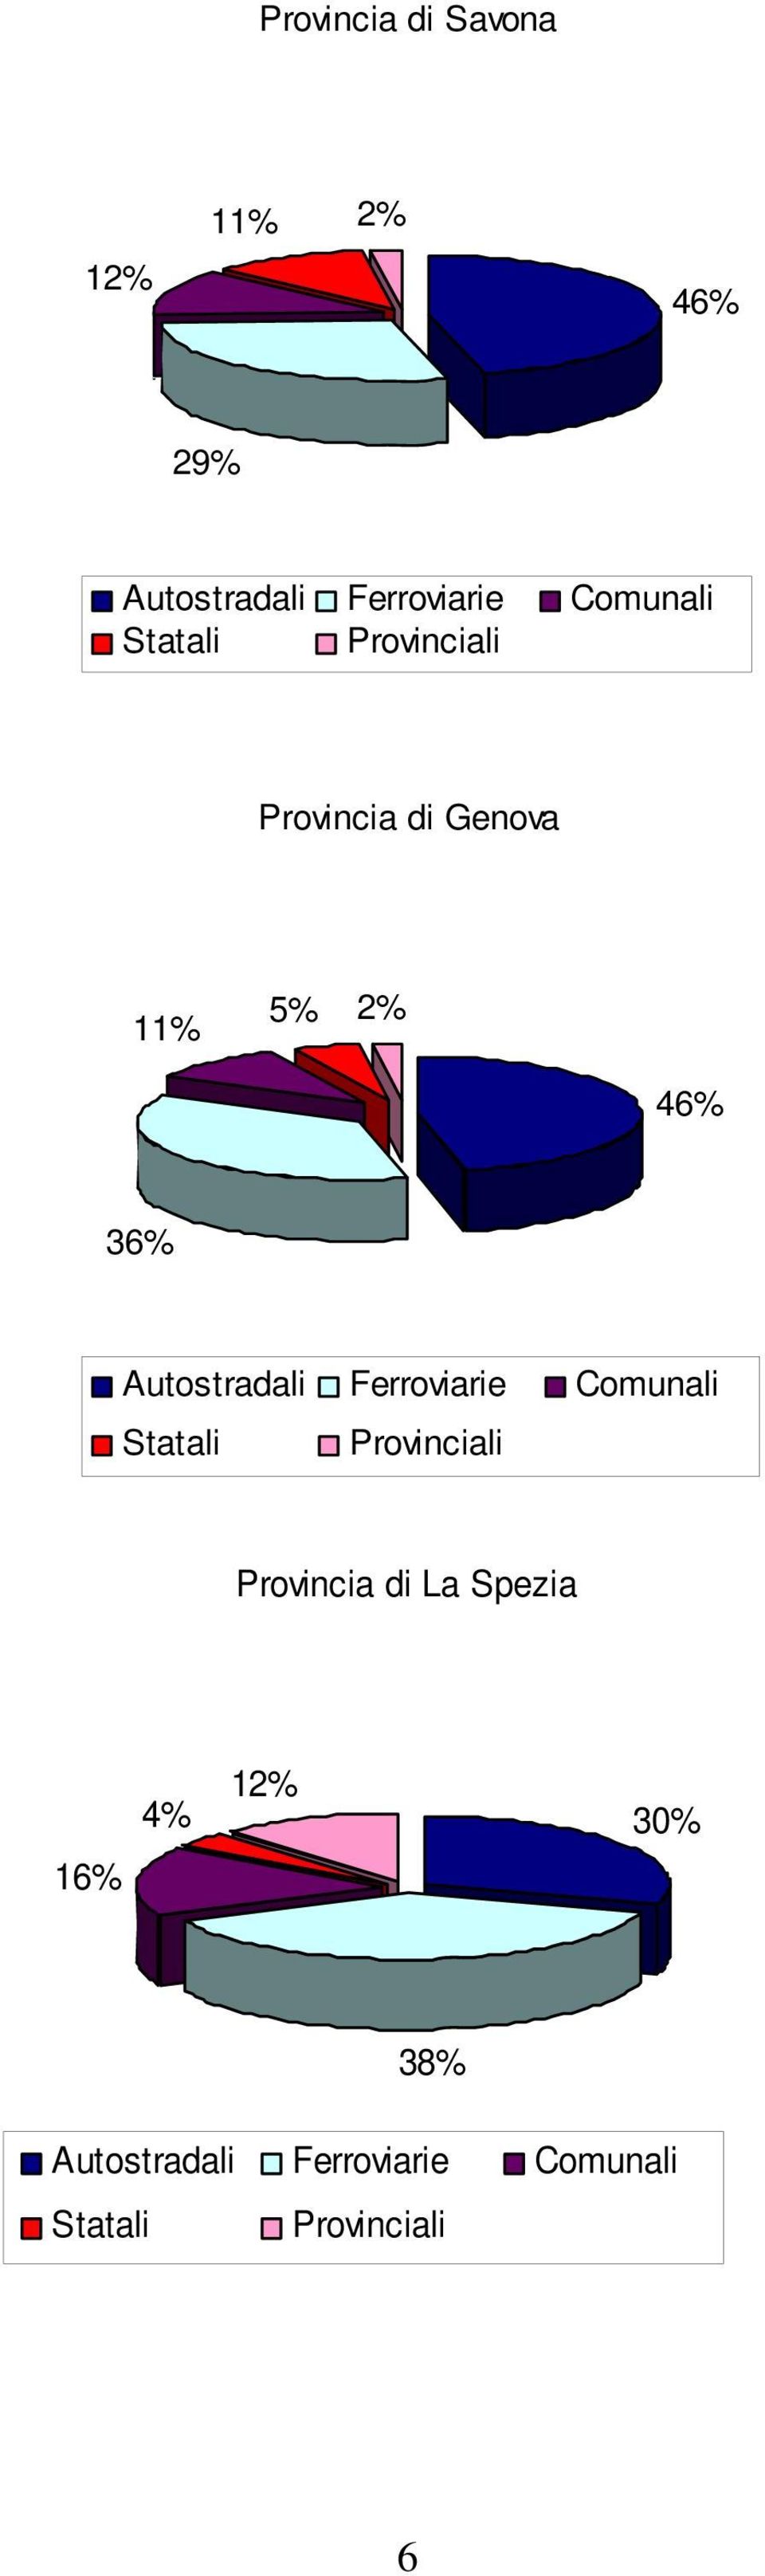 Autostradali Ferroviarie Comunali Statali Provinciali Provincia di La